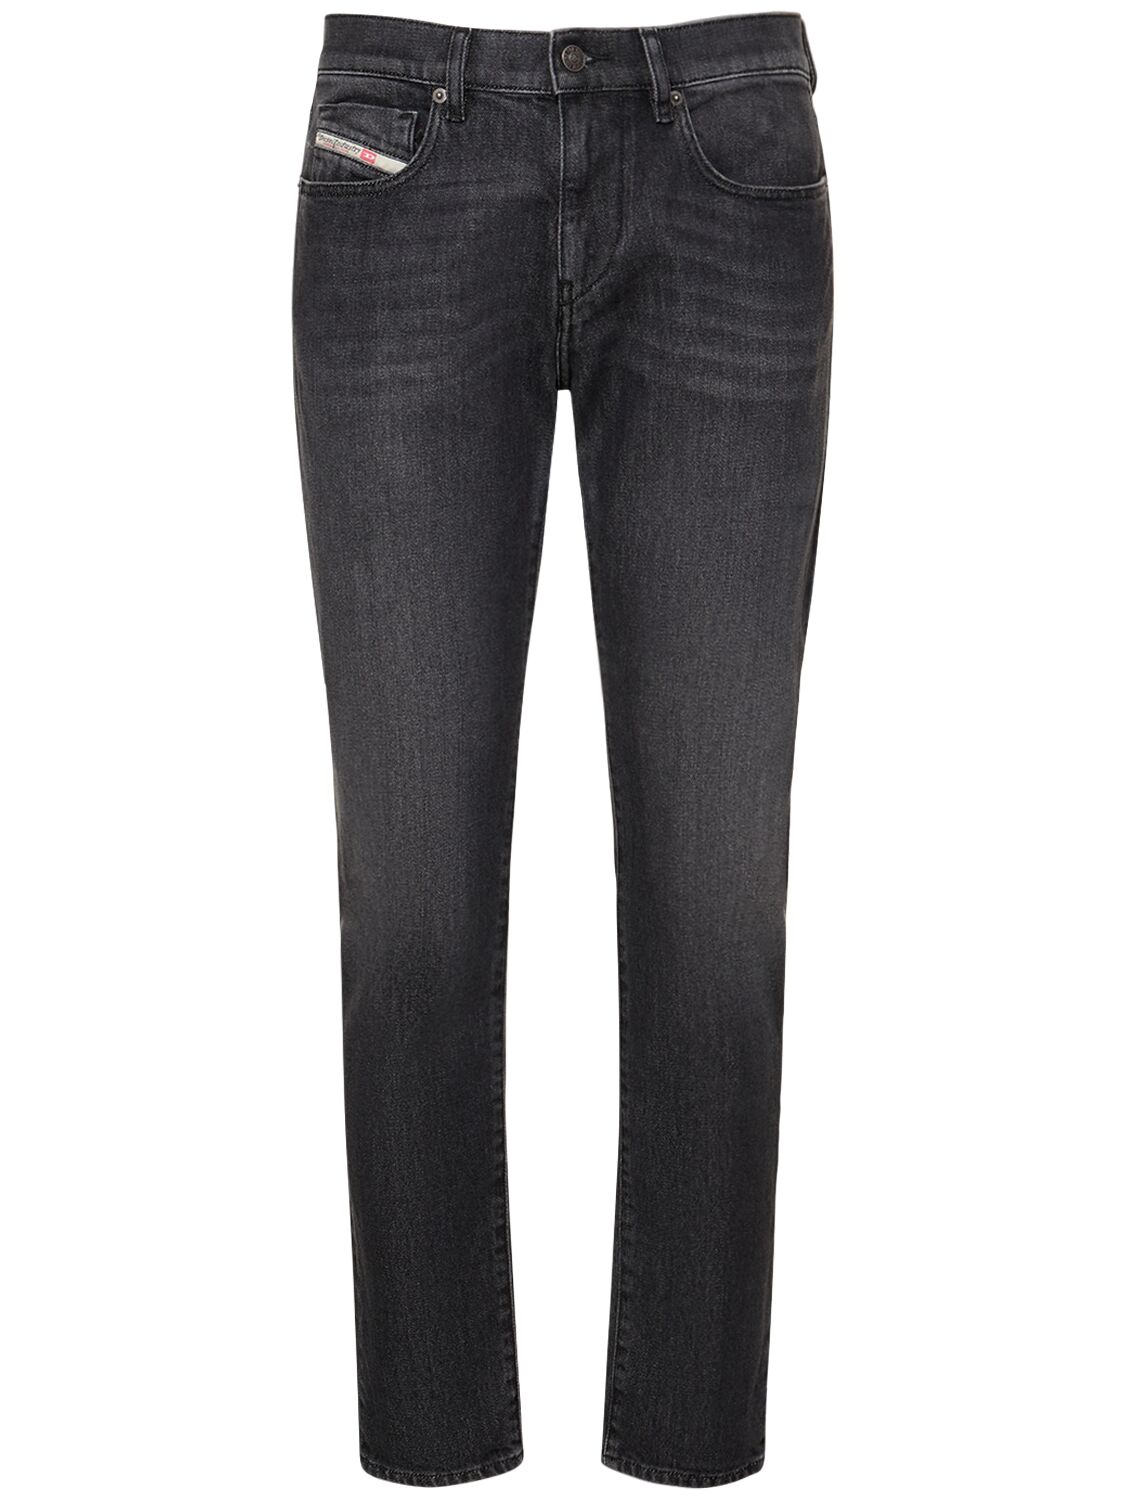 Jeans Slim Fit D-strukt In Denim Di Cotone - DIESEL - Modalova